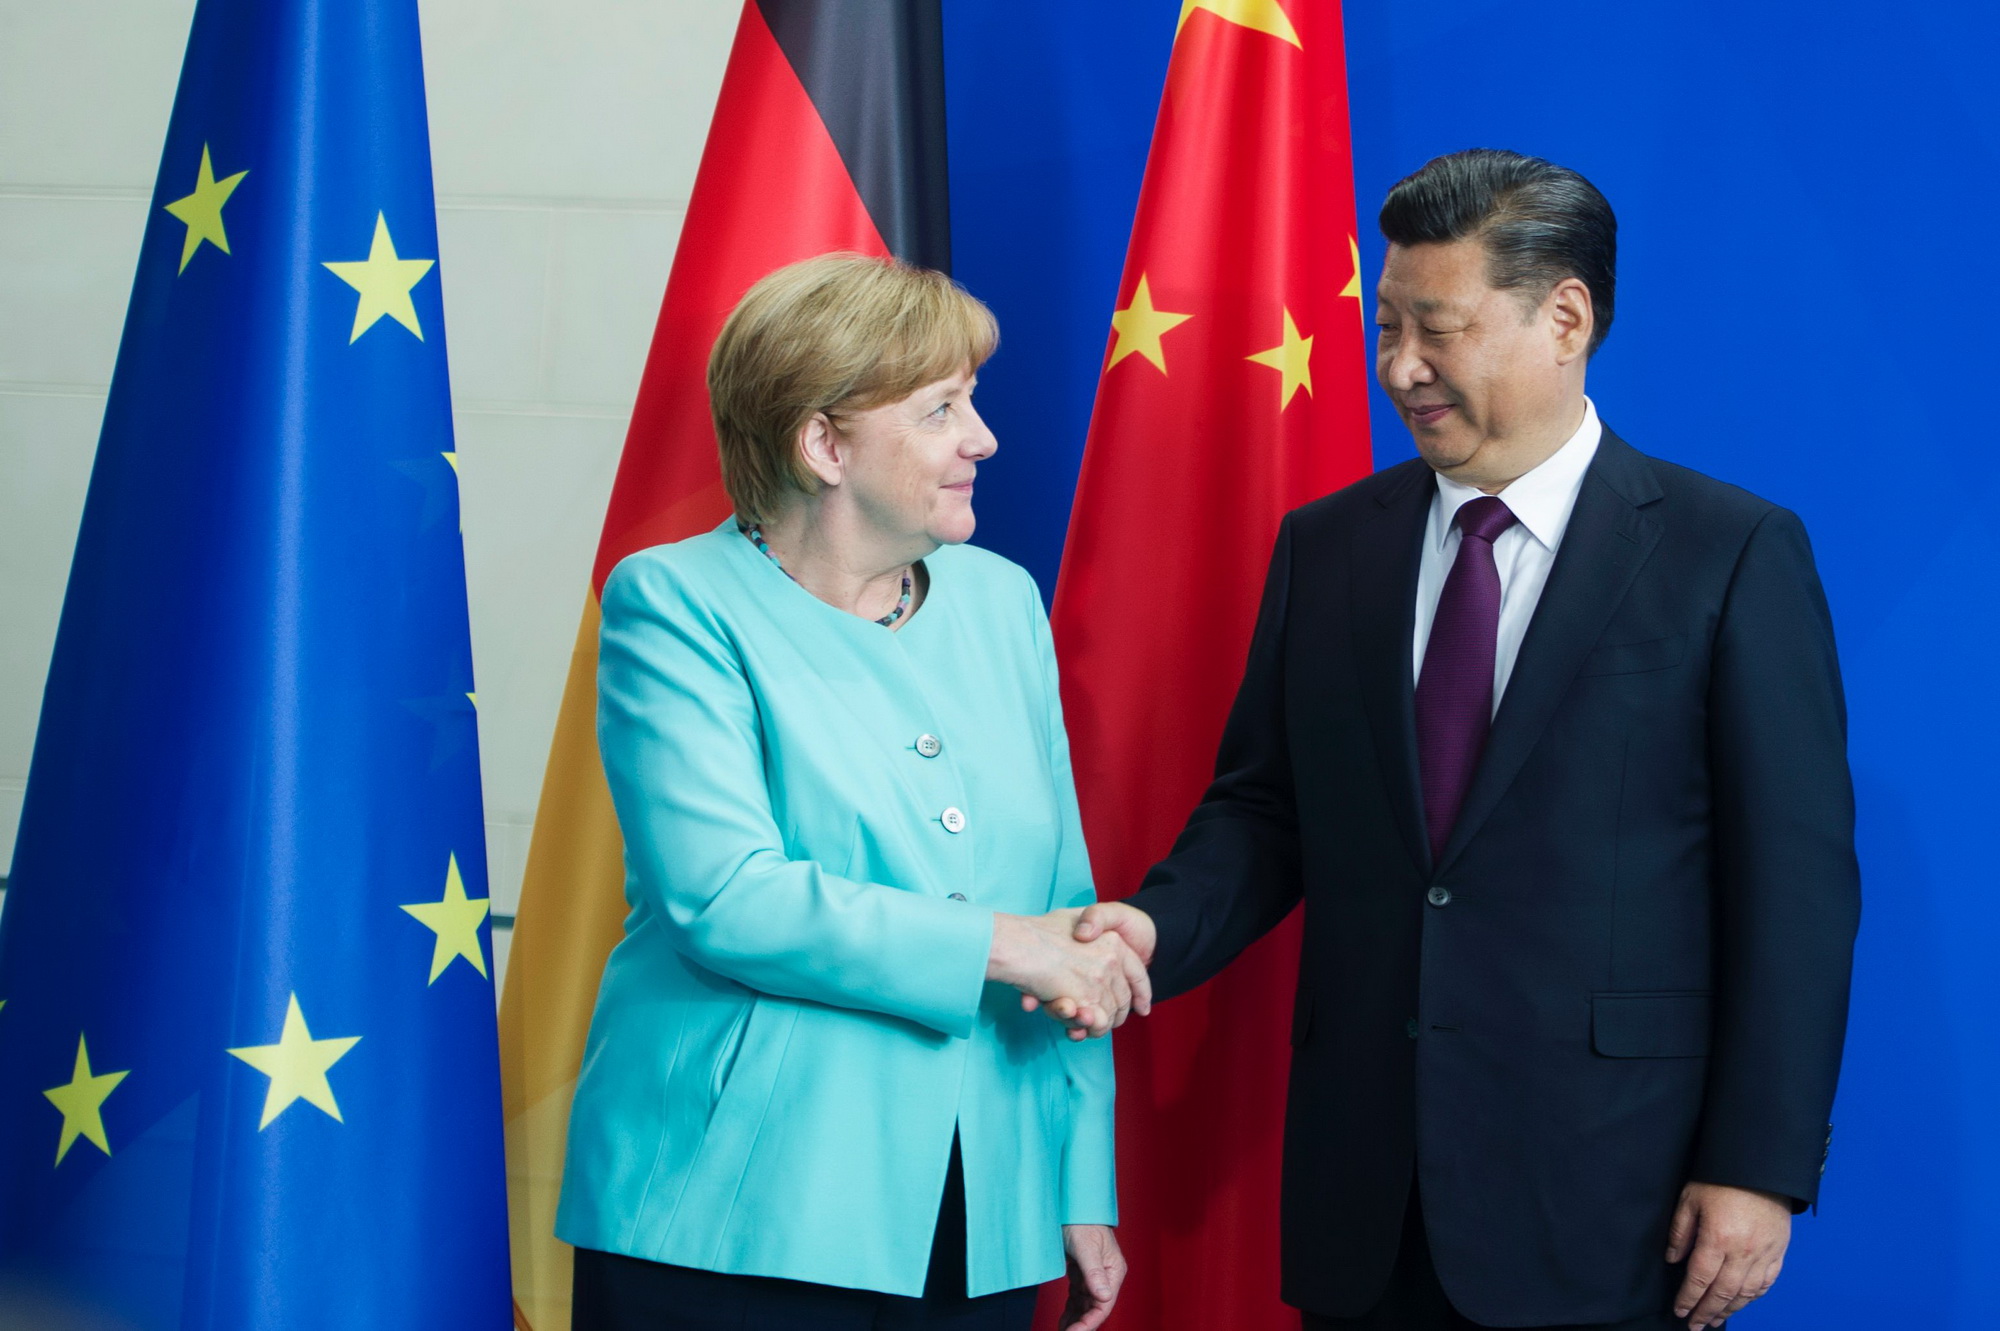 Chủ tịch Trung Quốc Tập Cận Bình (phải) và Thủ tướng Đức Angela Merkel (trái) tại cuộc họp báo ở Berlin ngày 5/7. (Ảnh: AFP/TTXVN)